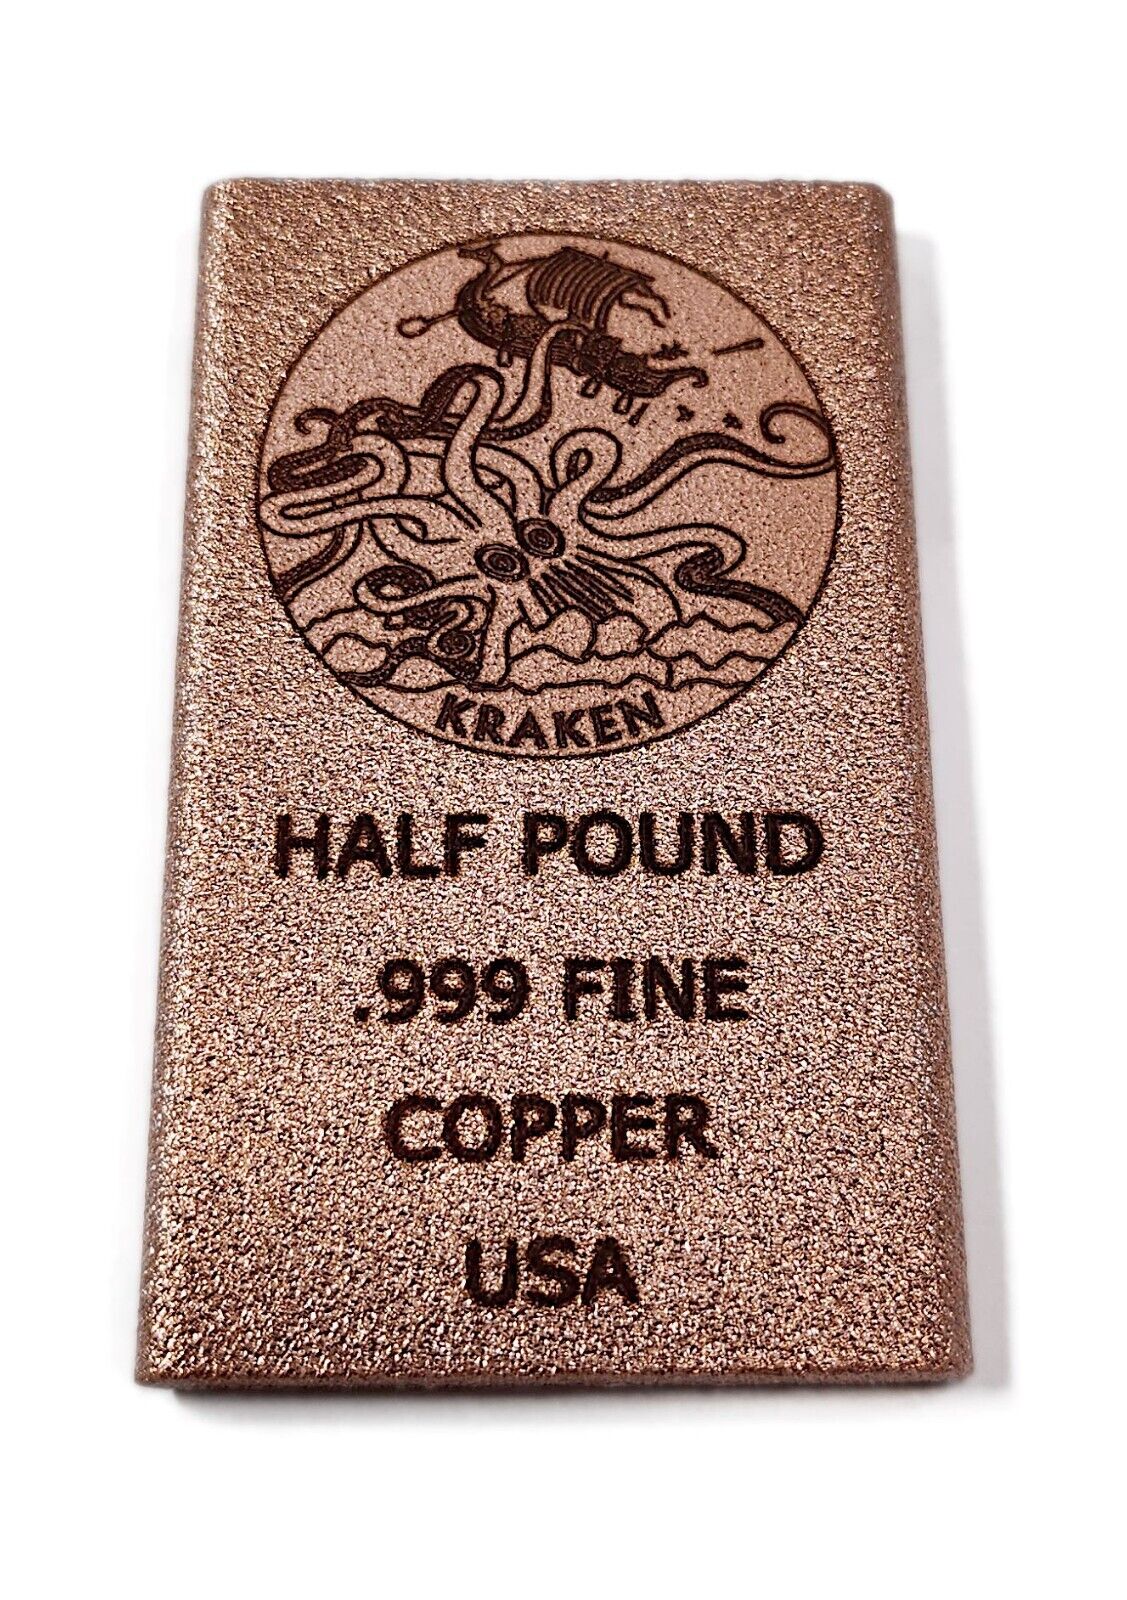 1/2 Pound Copper Bar - Kraken